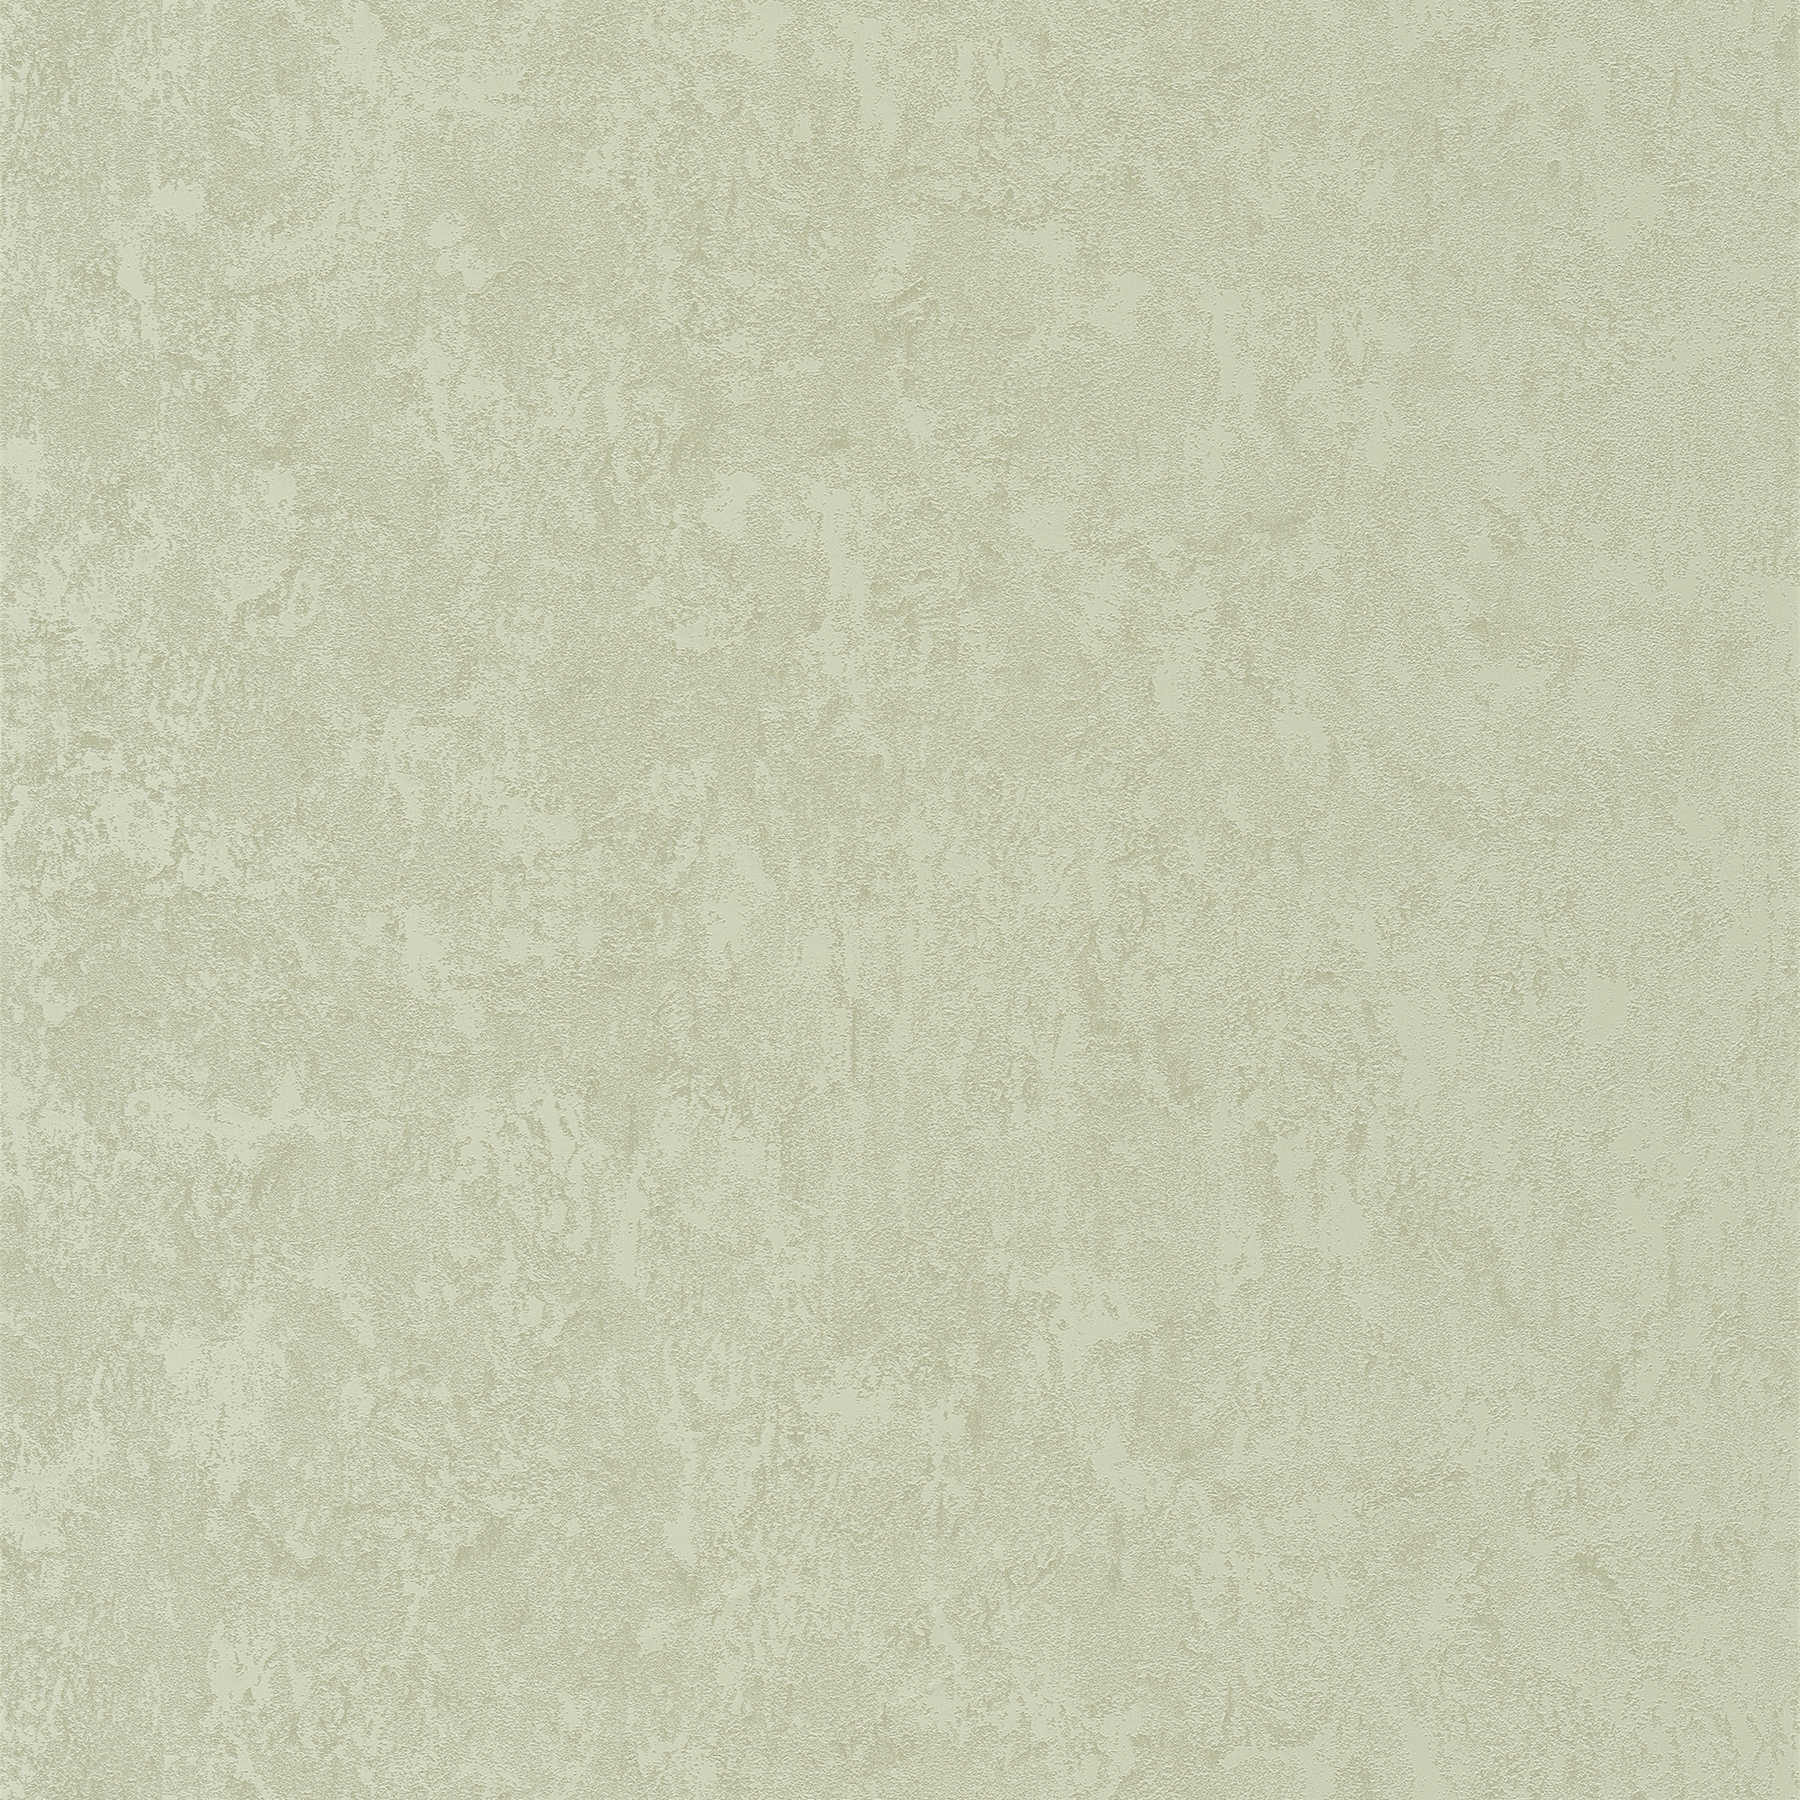 Plain wallpaper plaster look & surface texture - green
